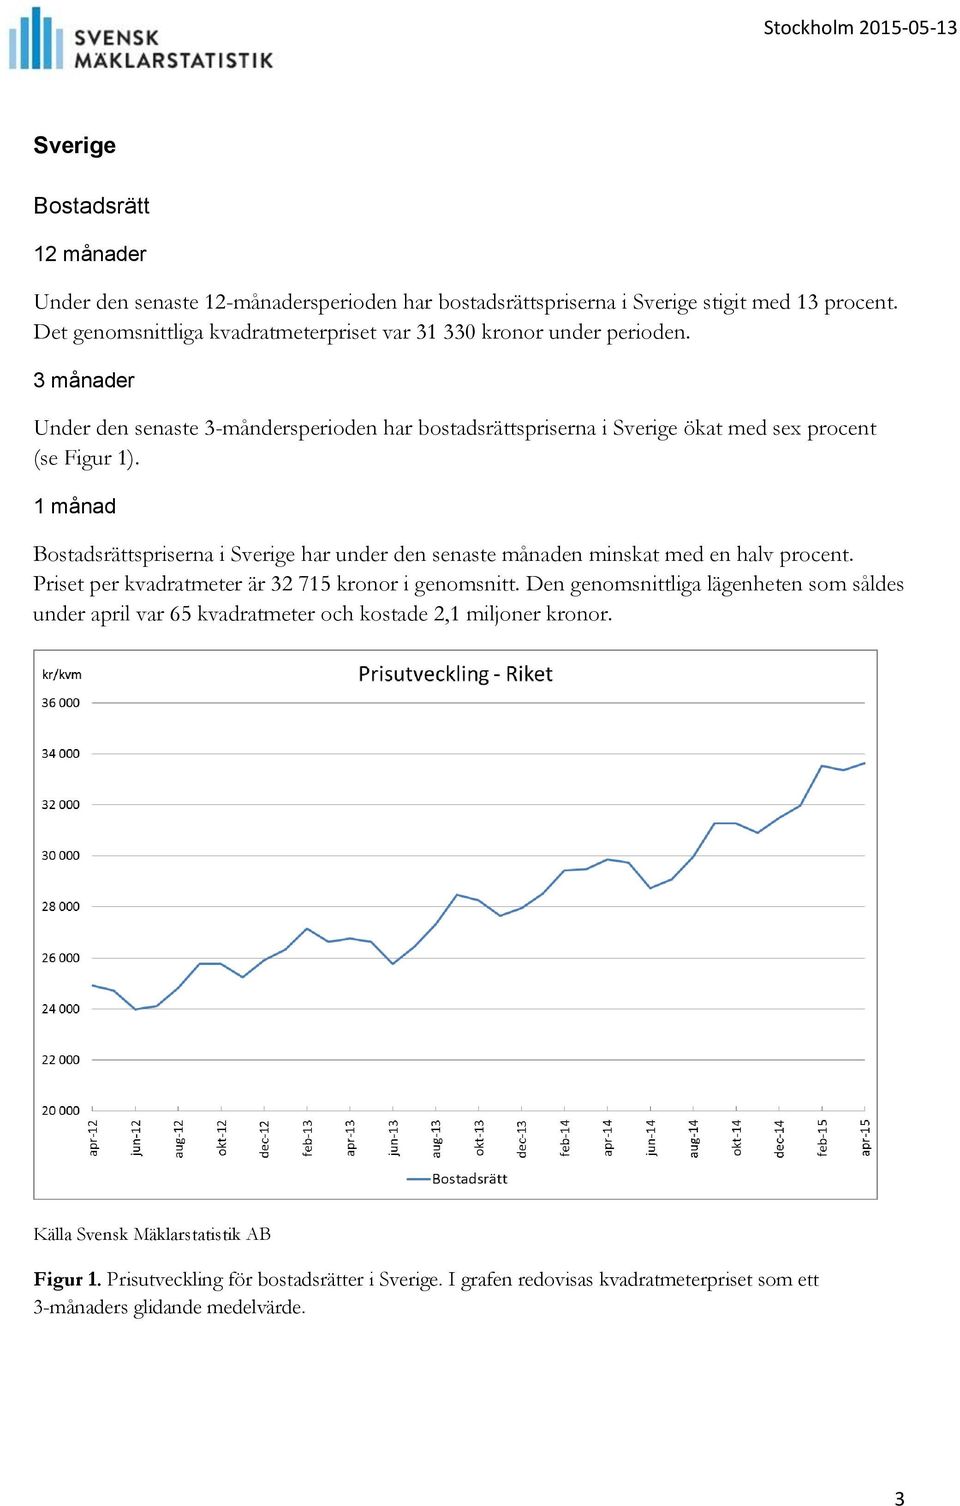 1 månad Bostadsrättspriserna i Sverige har under den senaste månaden minskat med en halv procent. Priset per kvadratmeter är 32 715 kronor i genomsnitt.